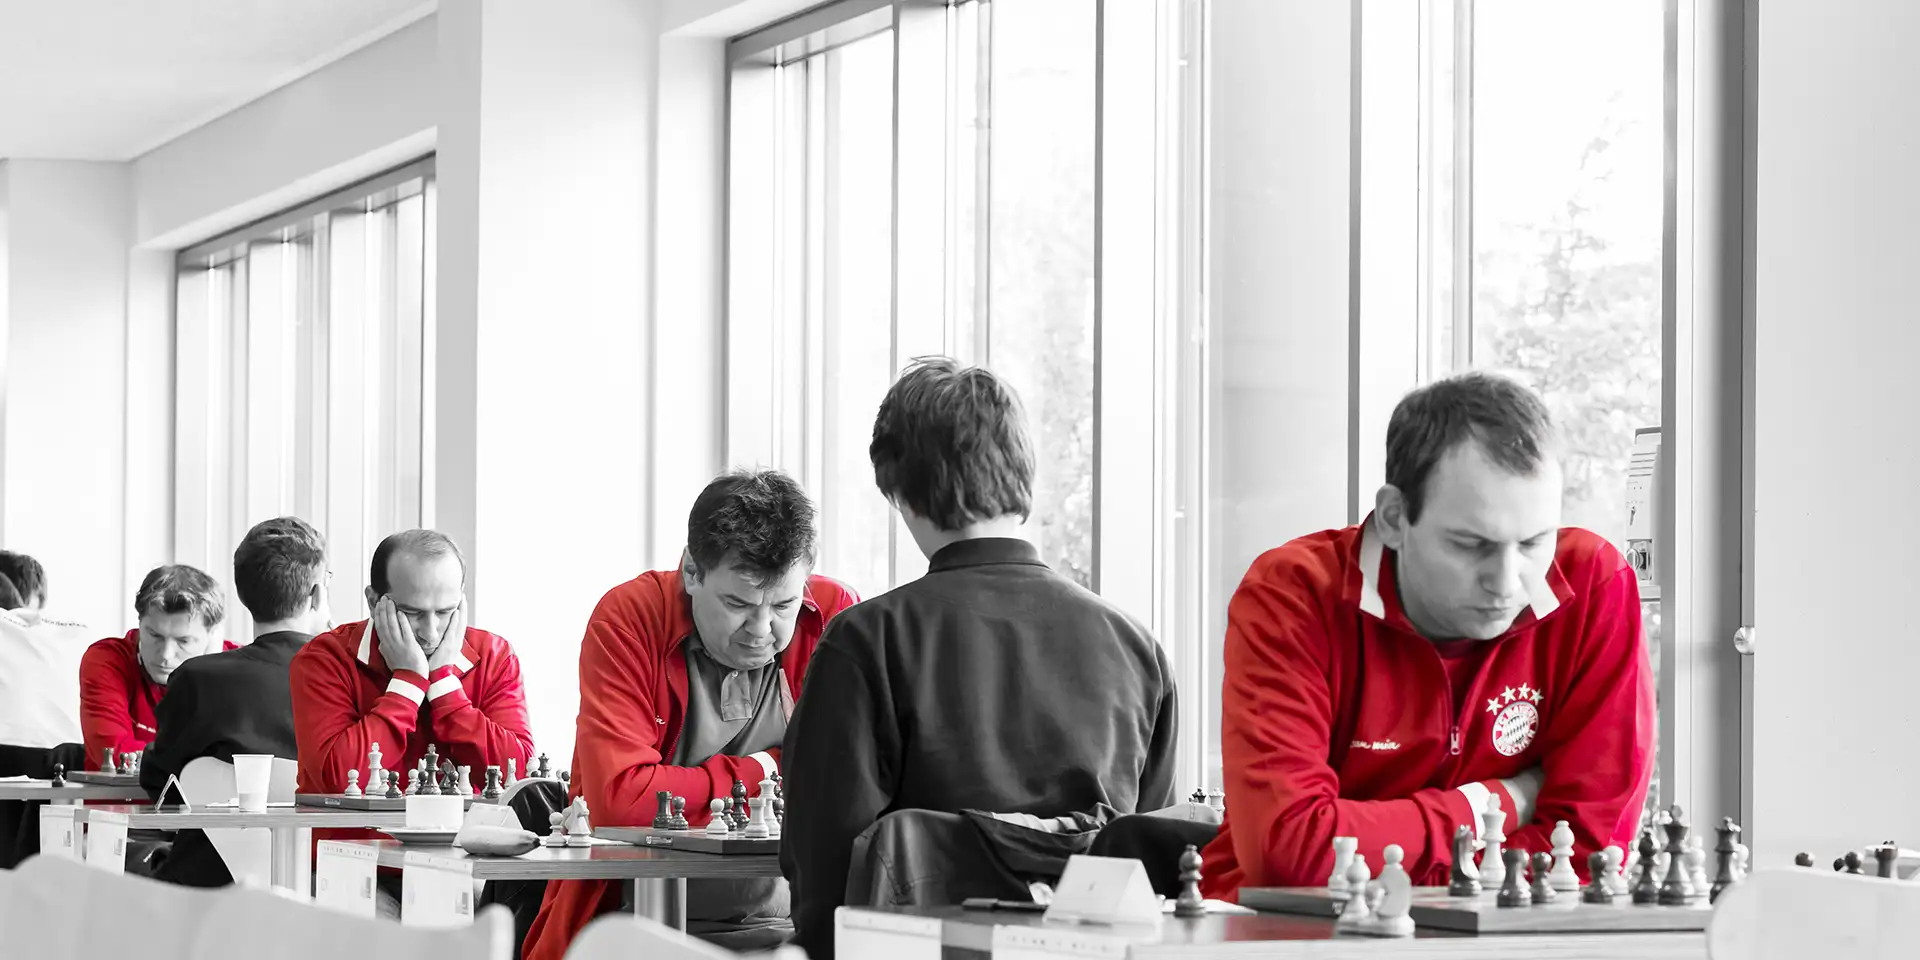 4 Schachspieler des FC Bayern München in roten Trikots im Spiel mit ihren GHegnern vor einer hellen Fensterwand